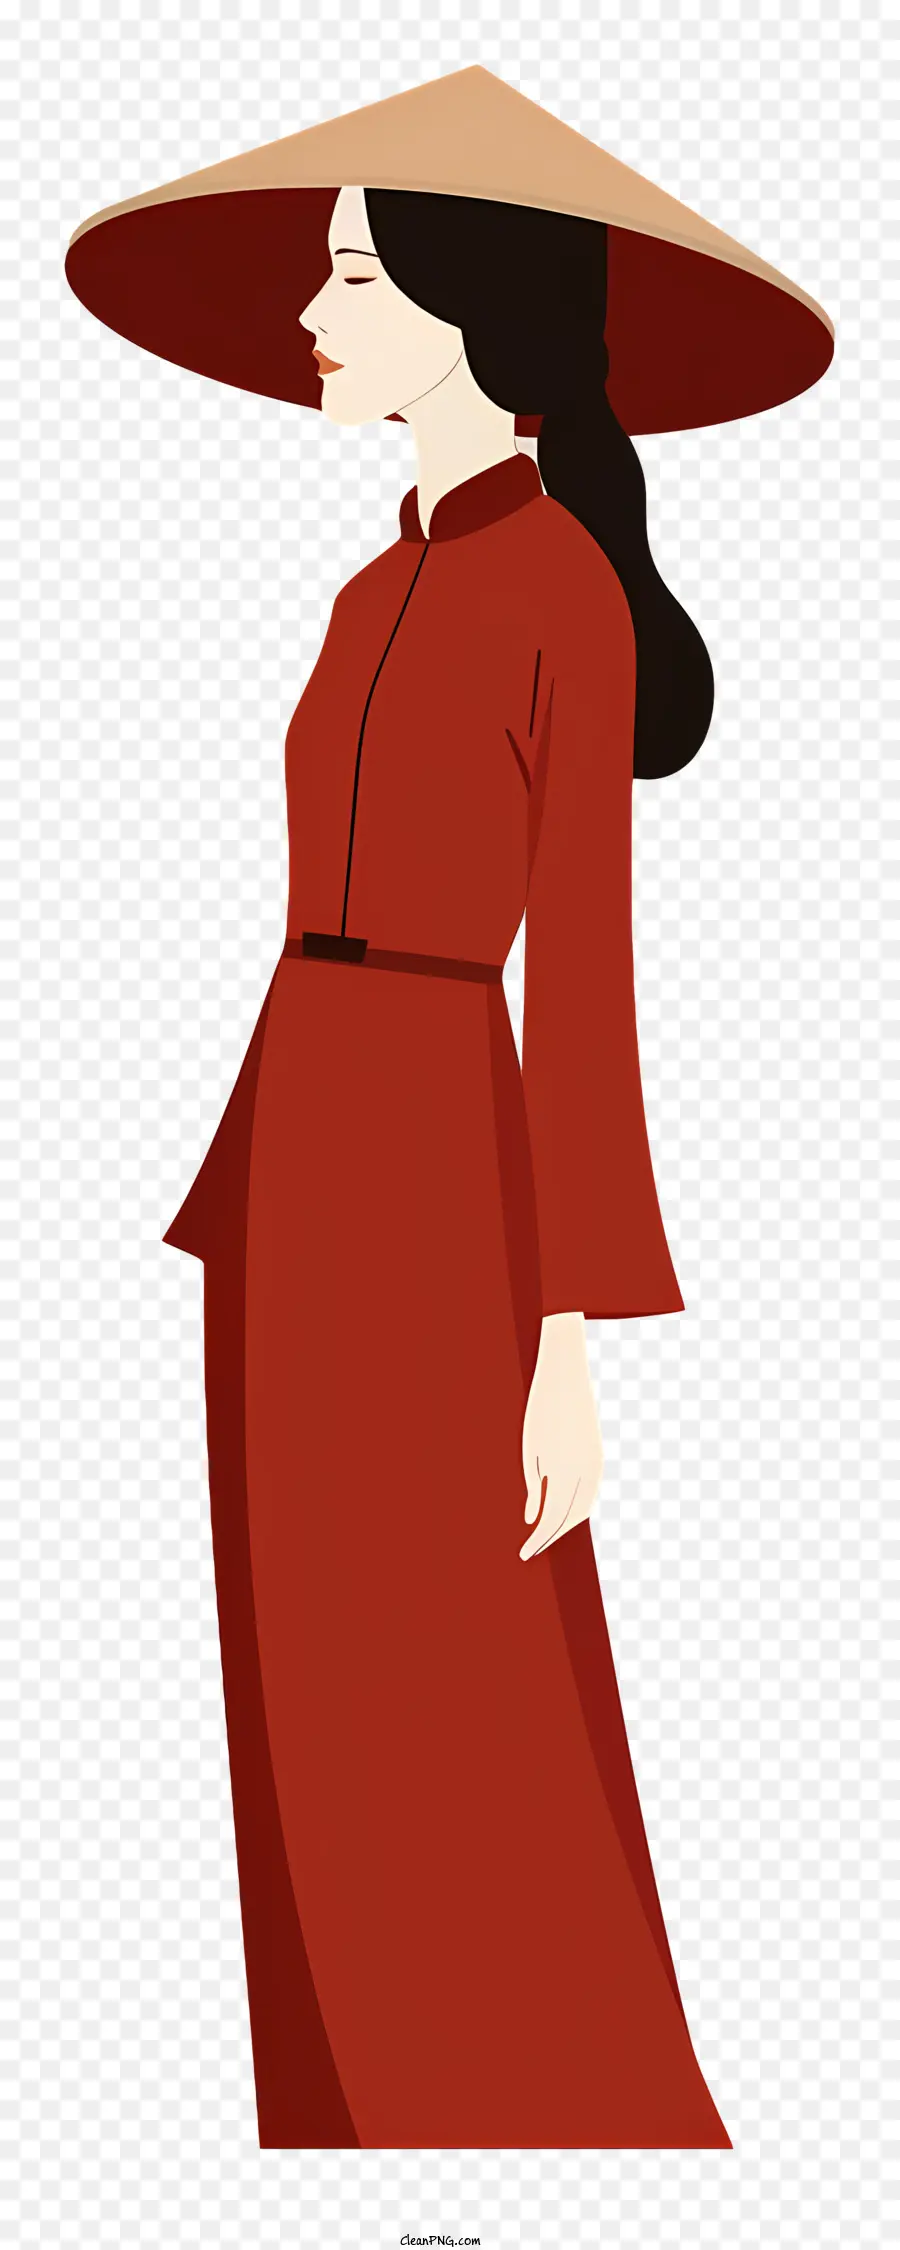 Mode für den Sommer - Person im roten Kleid, Strohhut, posieren